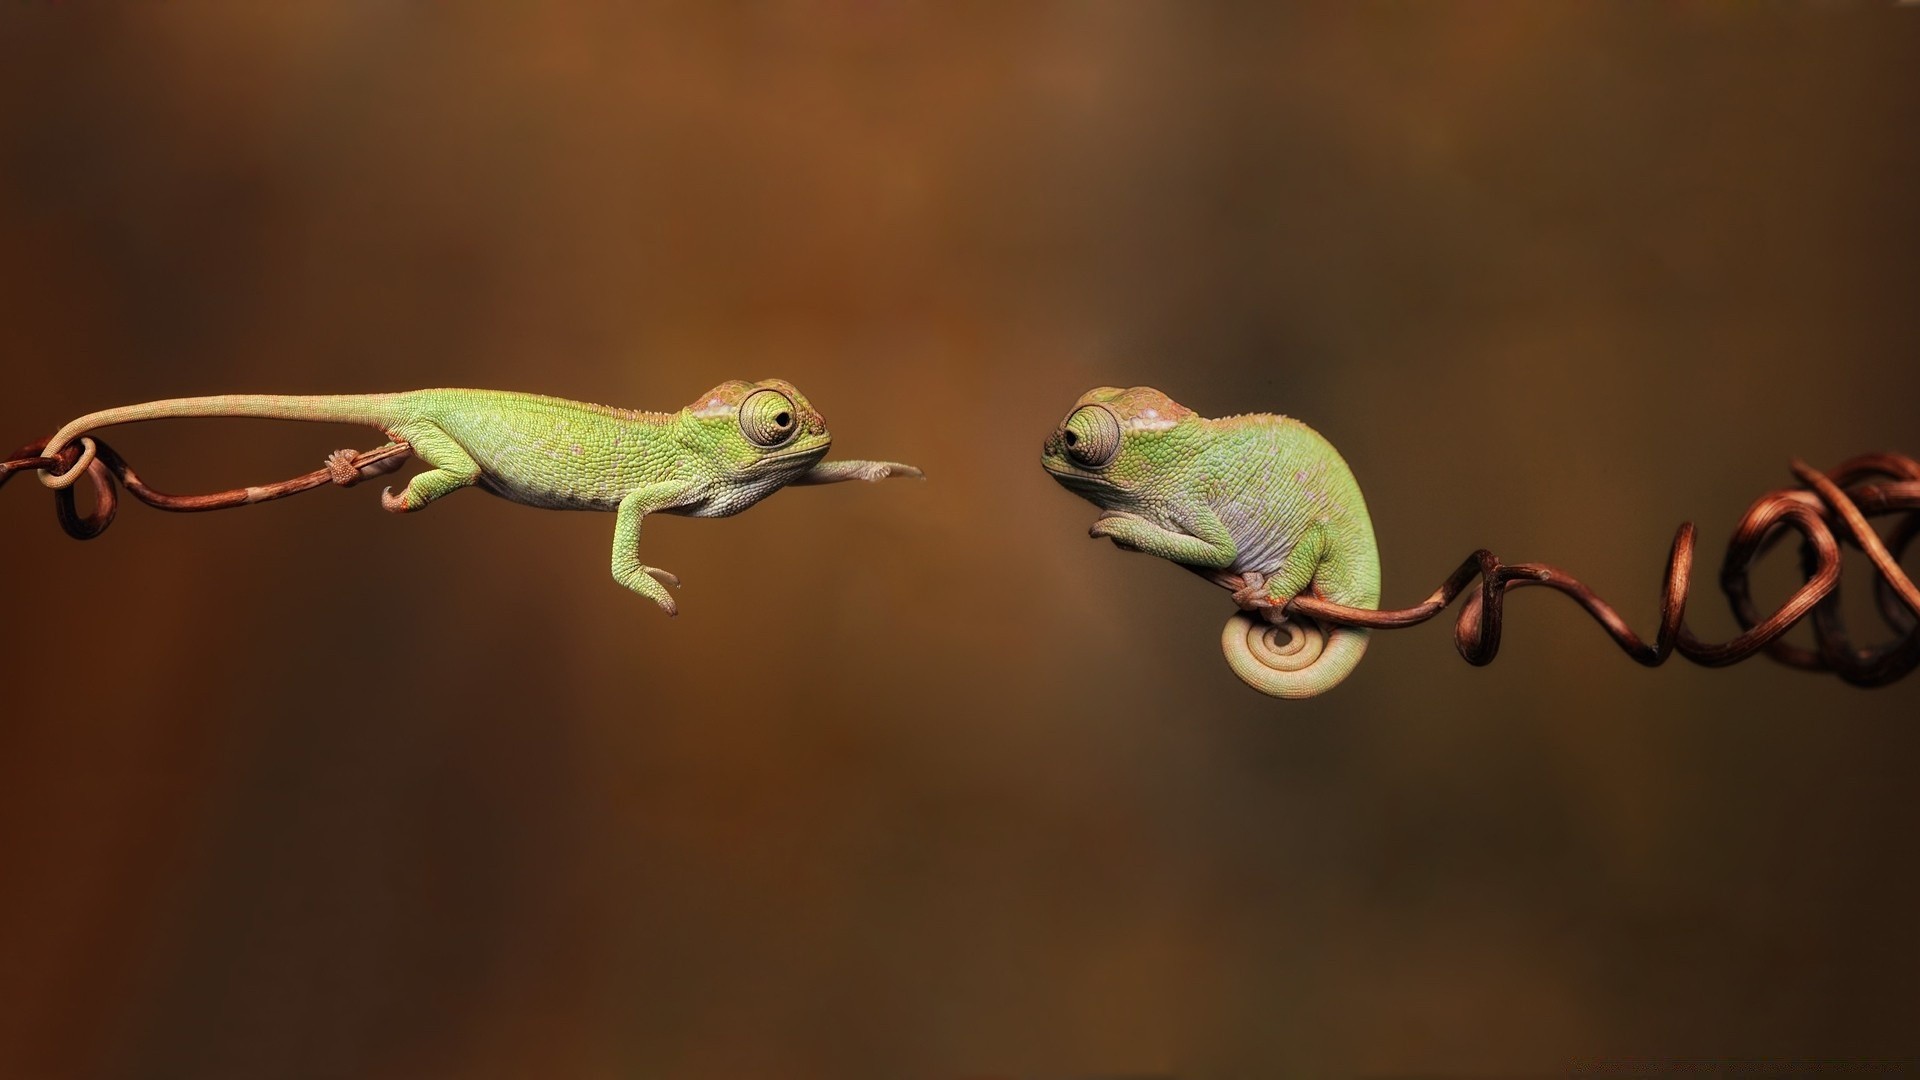 рептилии и лягушки дикой природы животное природа гадина ящерица лягушка цвет вид сбоку дерево портрет гекко тропический лист